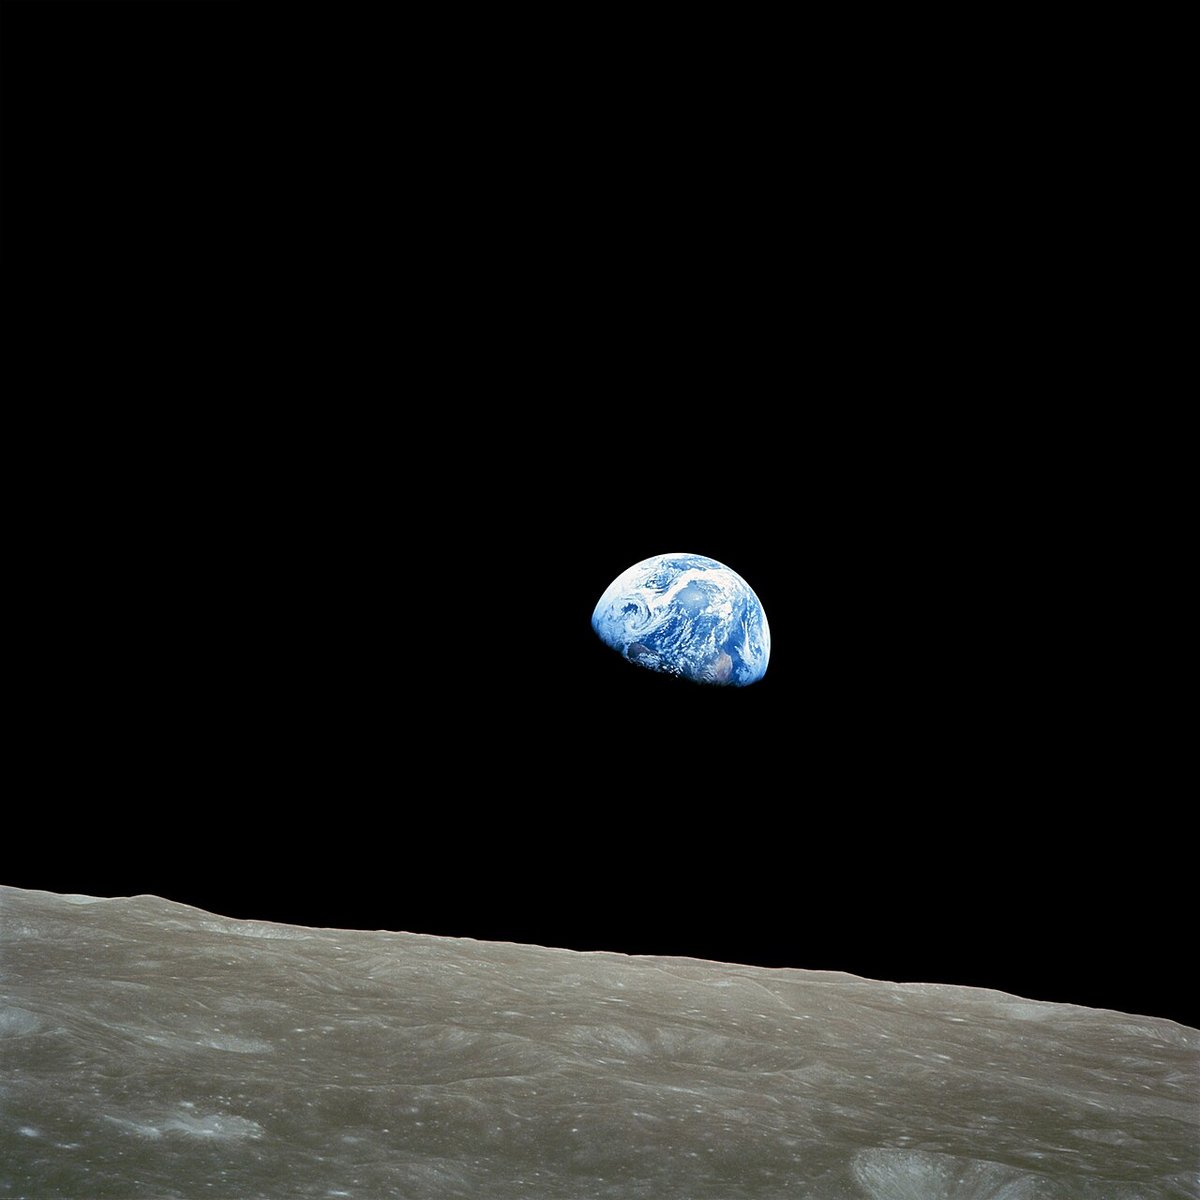 Le célèbre Earthrise, ou "lever de Terre", capturé par Bill Anders lors de la mission Apollo 8 © NASA